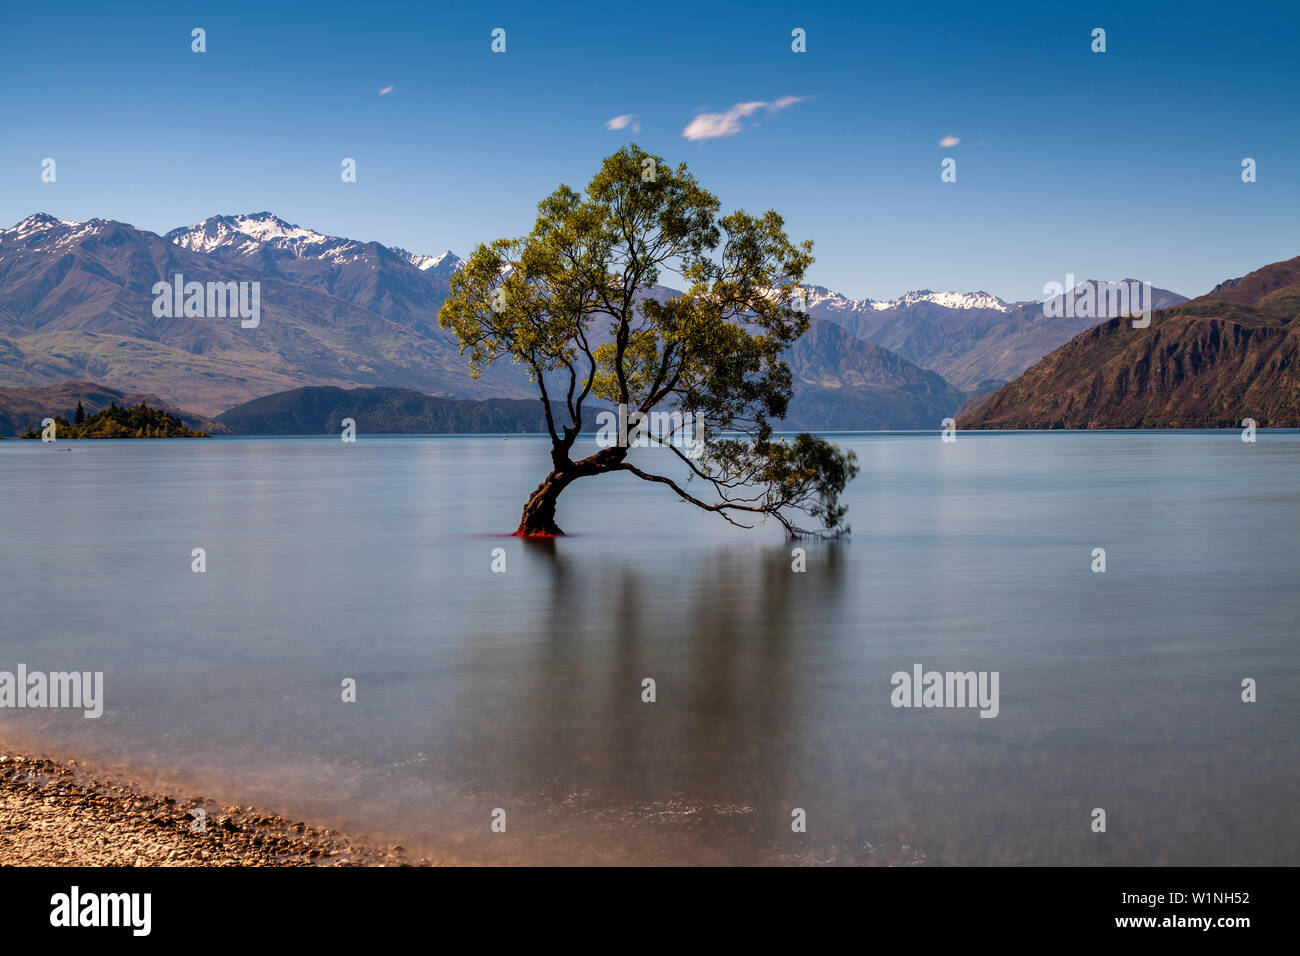 La icónica "Lone Tree' en el lago, el Lago Wanaka, la Región de Otago, Isla del Sur, Nueva Zelanda Foto de stock